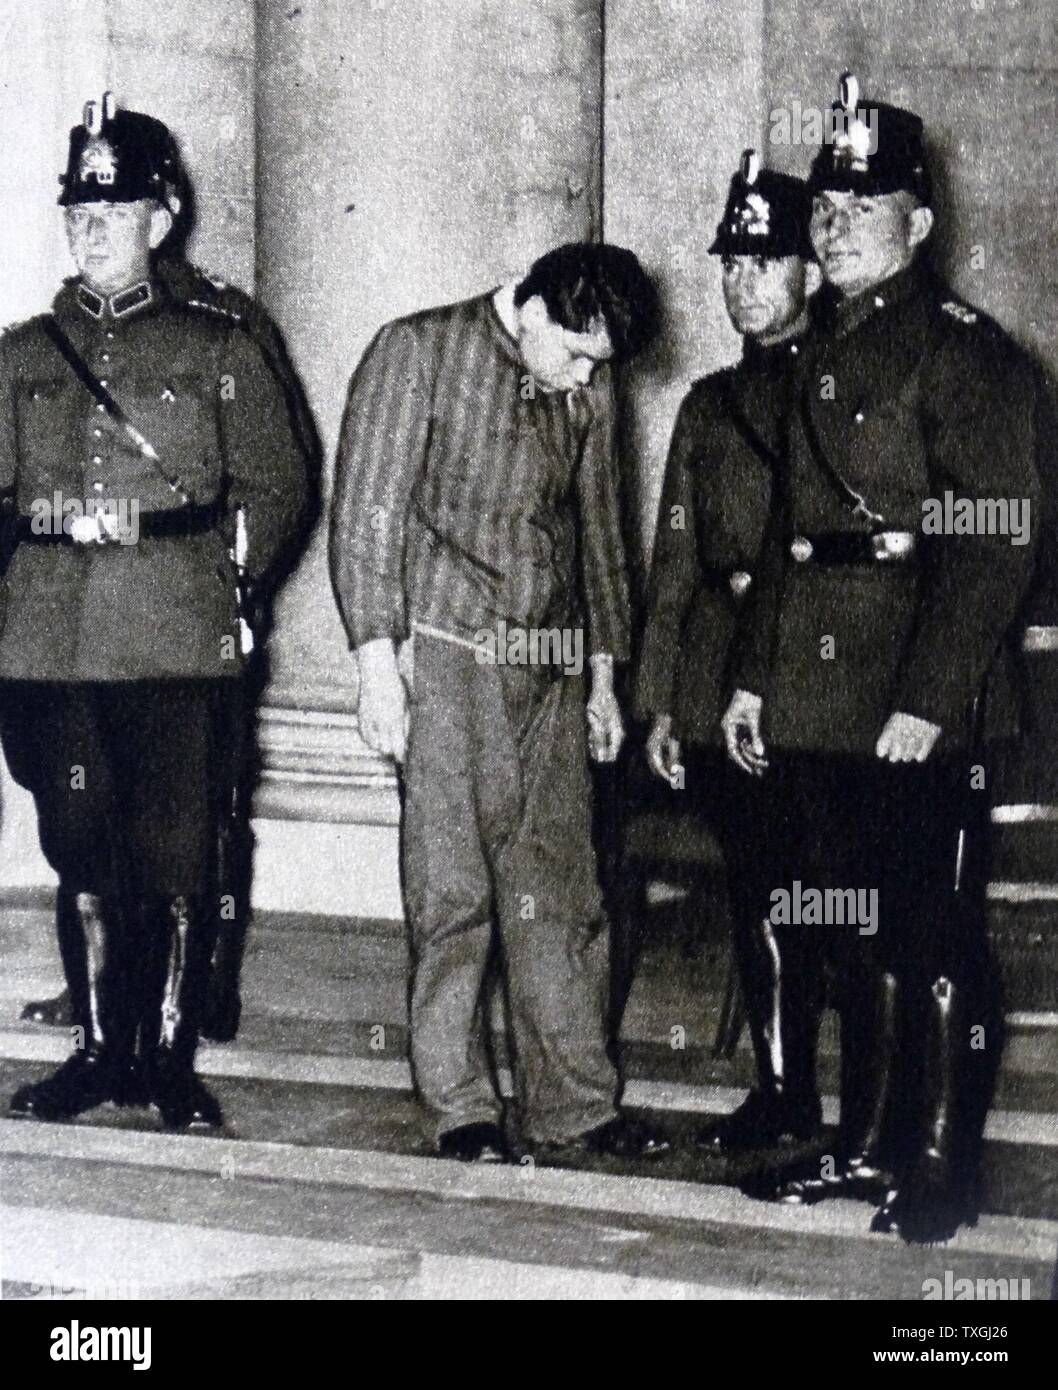 Fotodruck von Marinus van der Lubbe (1909-1934) mit Polizeibeamten außerhalb des Gerichts. Marinus van der Lubbe, niederländischen Rates Kommunist, der verurteilt wurde, wegen Brandstiftung in das Reichstagsgebäude. Vom 20. Jahrhundert Stockfoto